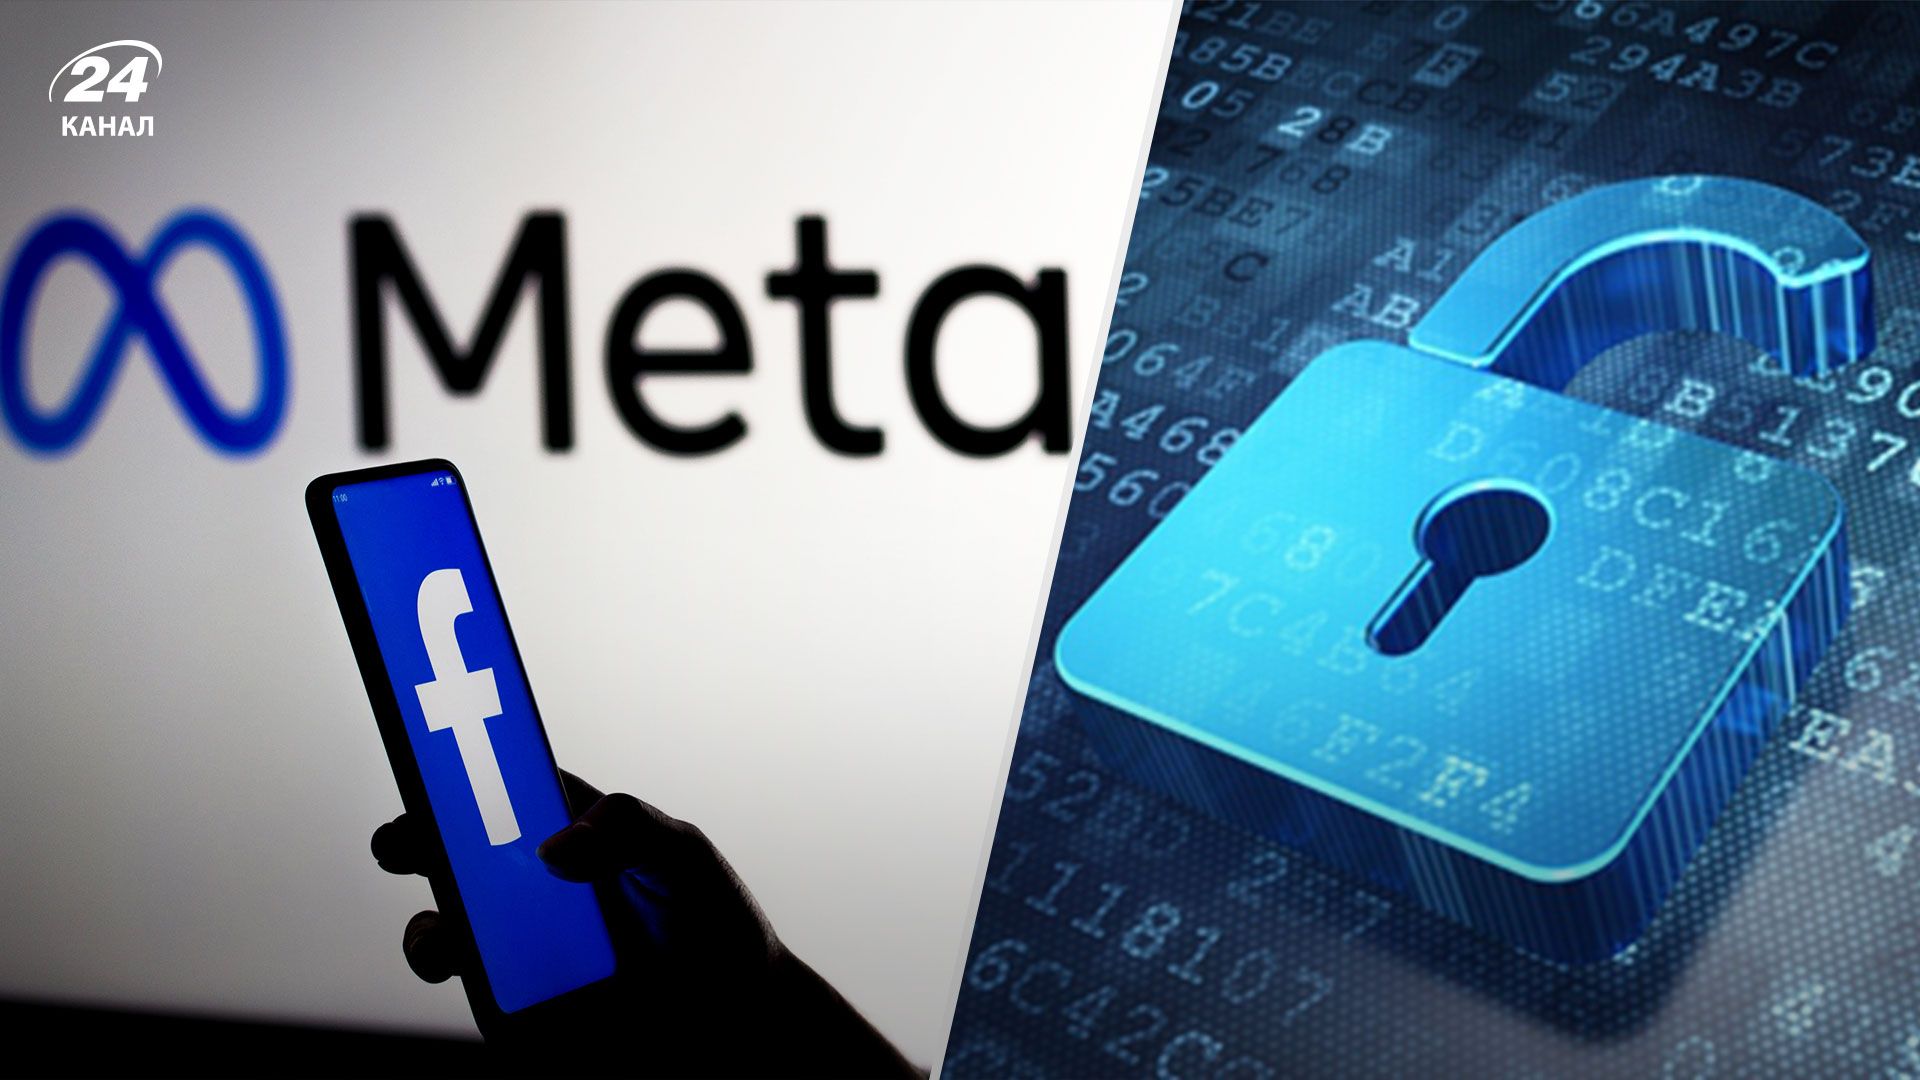 Meta согласилась оплатить пользователям Facebook более 700 миллионов долларов, чтобы урегулировать судебный иск